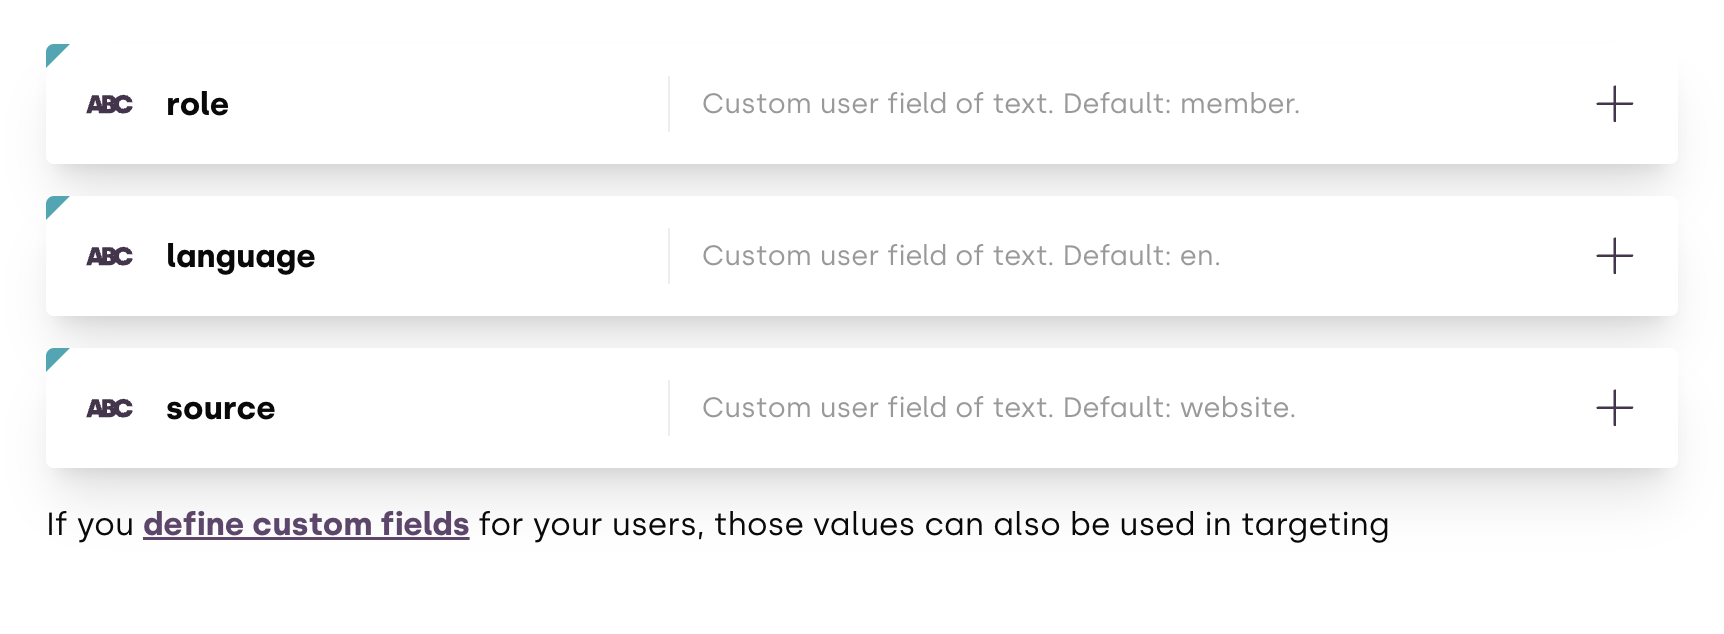 Using custom user data for targeting